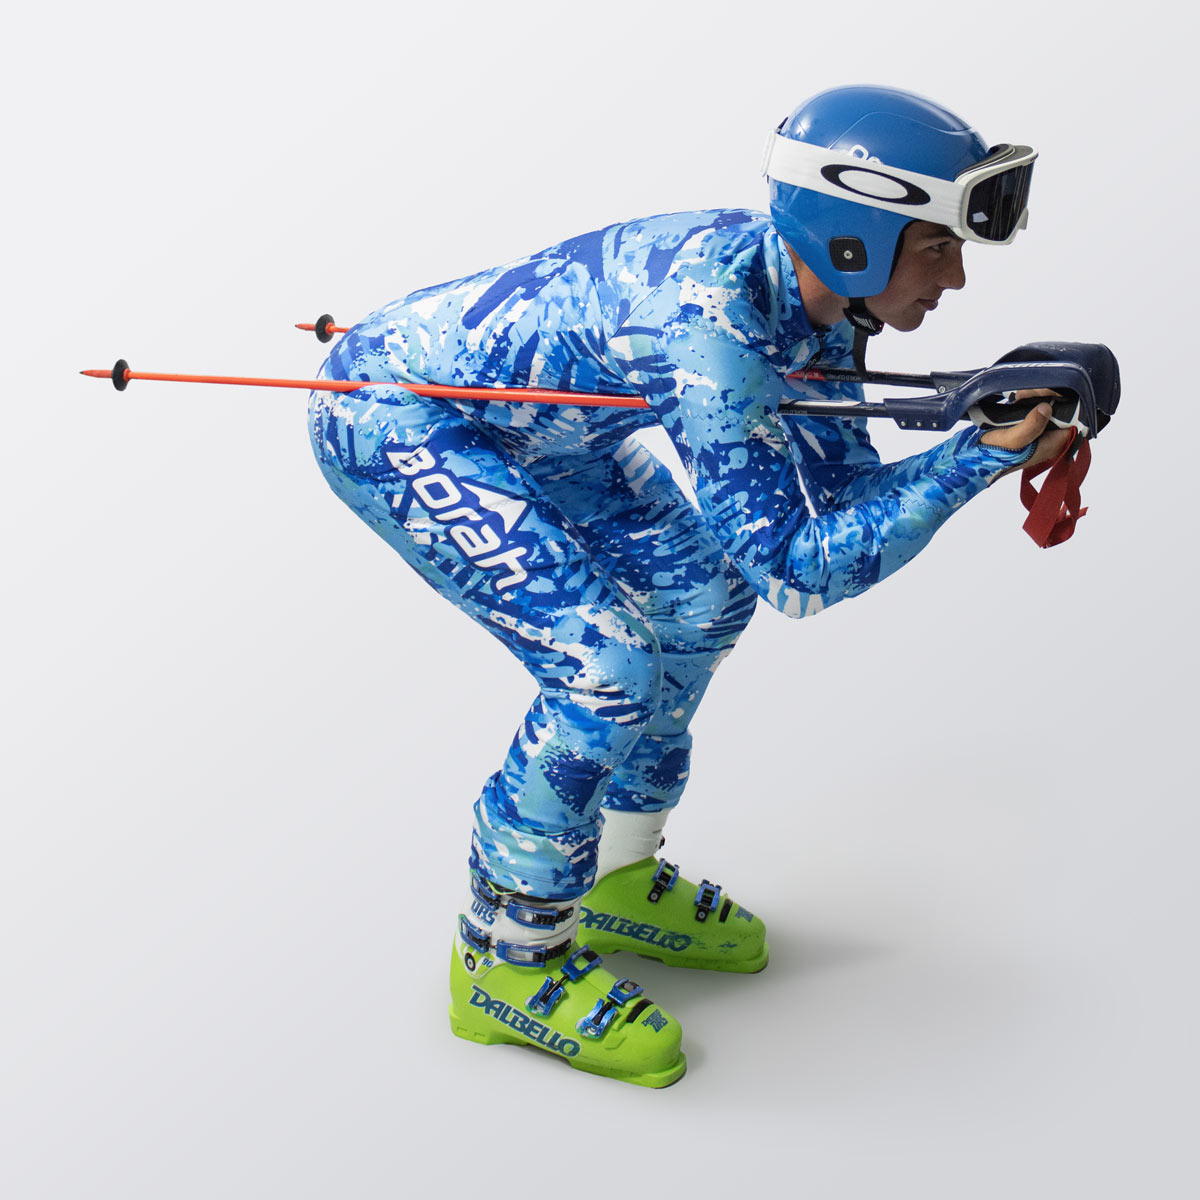 Custom Ski Race Suits on Sale